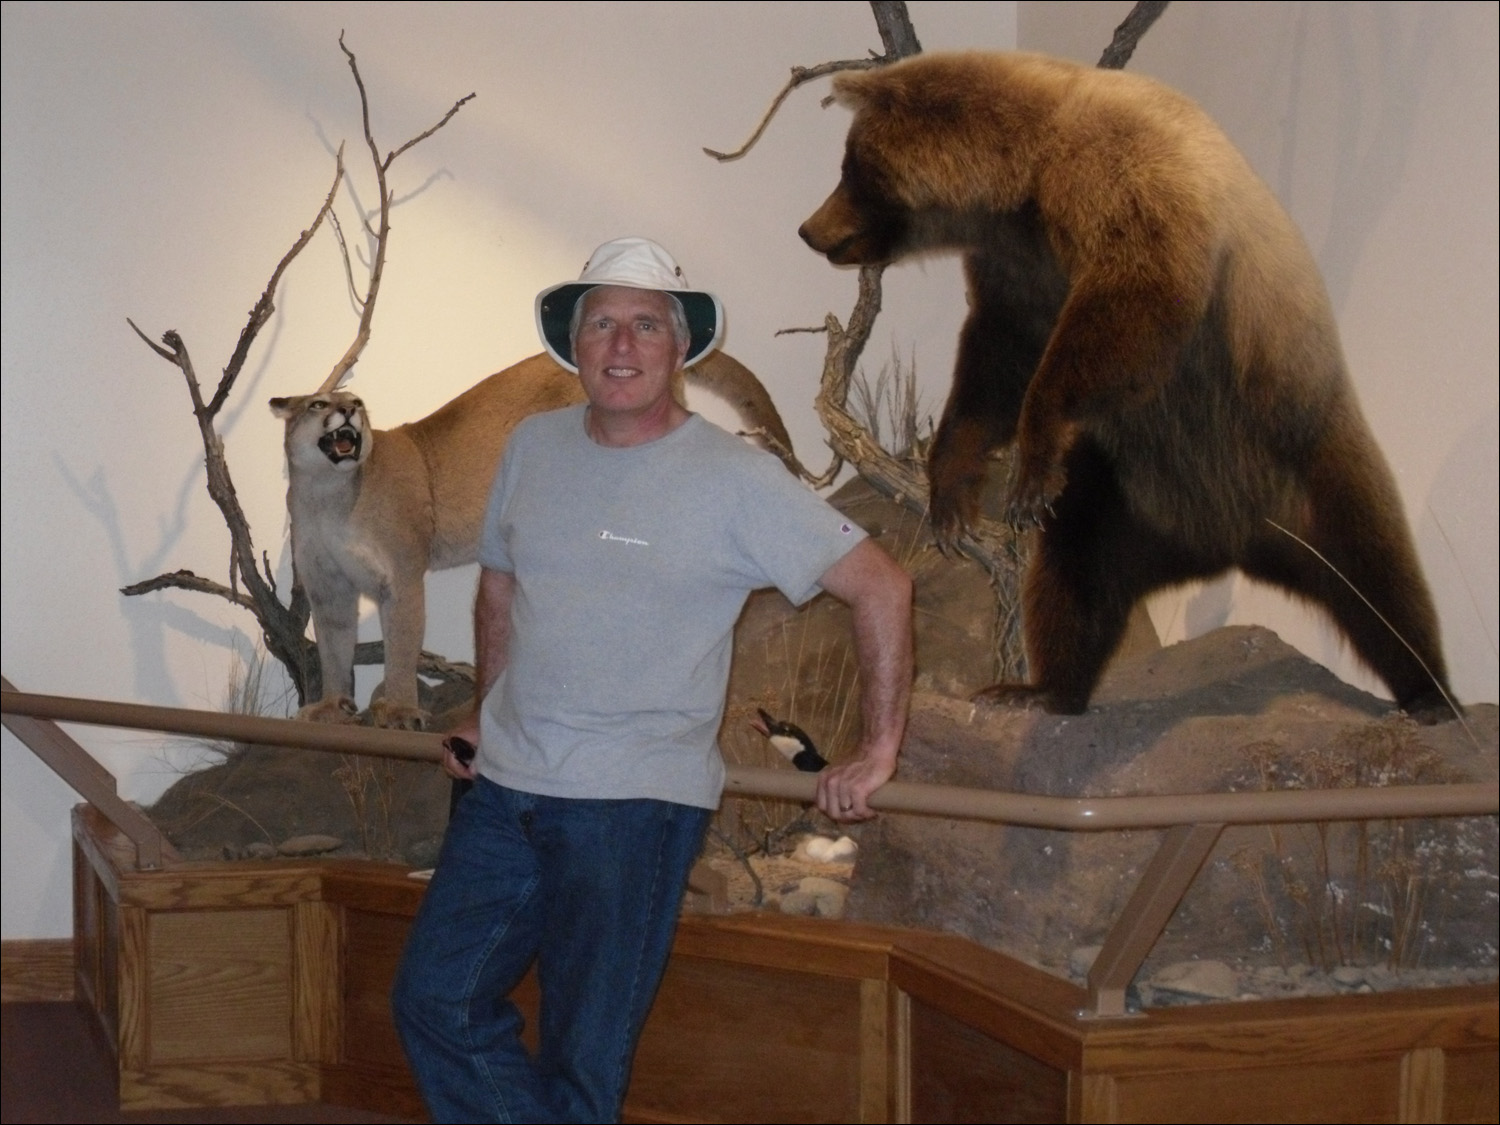 Fort Benton, MT Agriculture Museum-Bob w/lion & bear